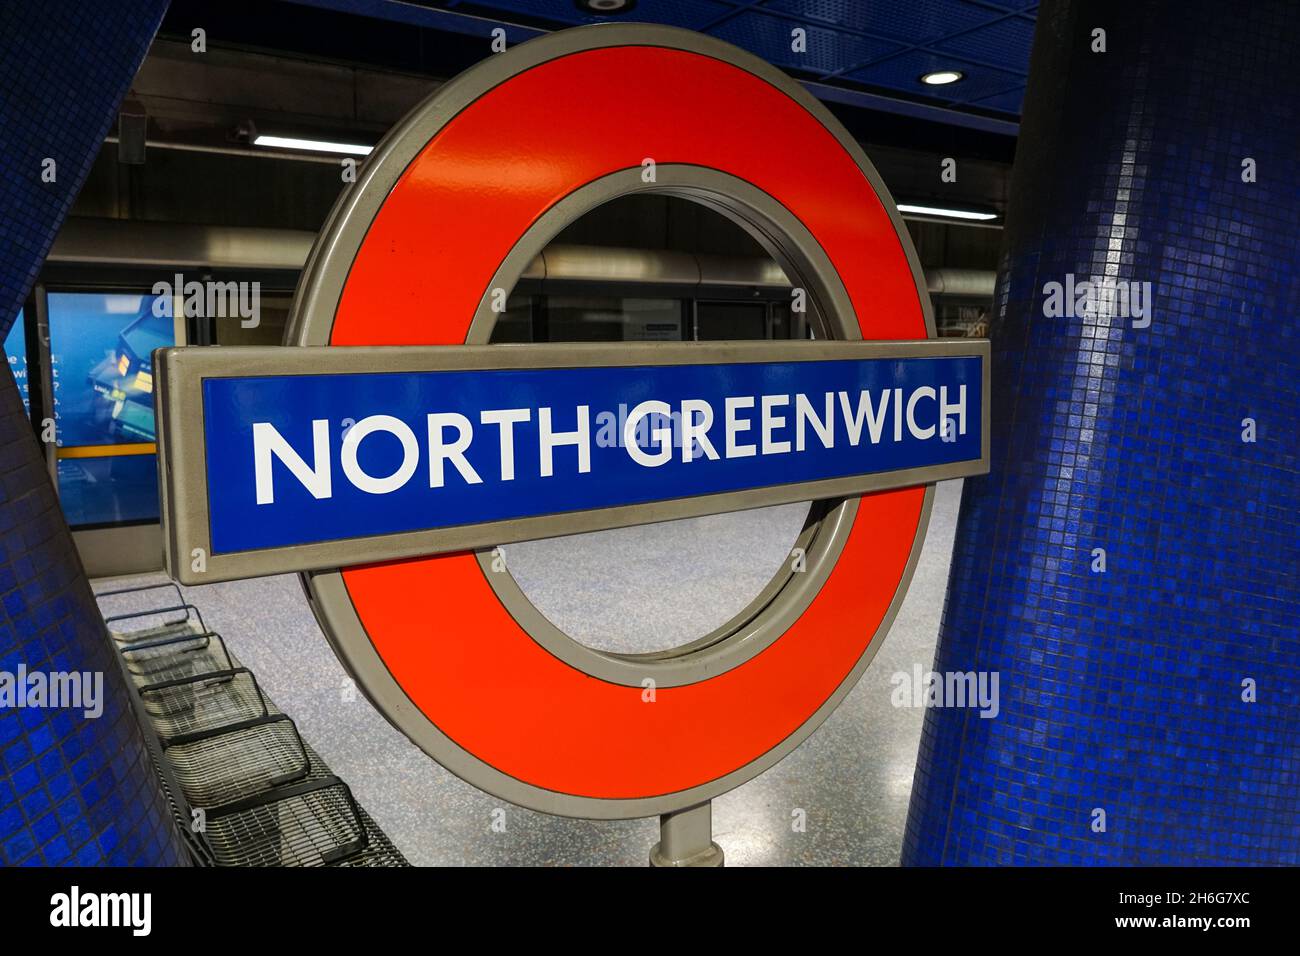 North Greenwich underground, tube station roundel sign London England United Kingdom UK Stock Photo